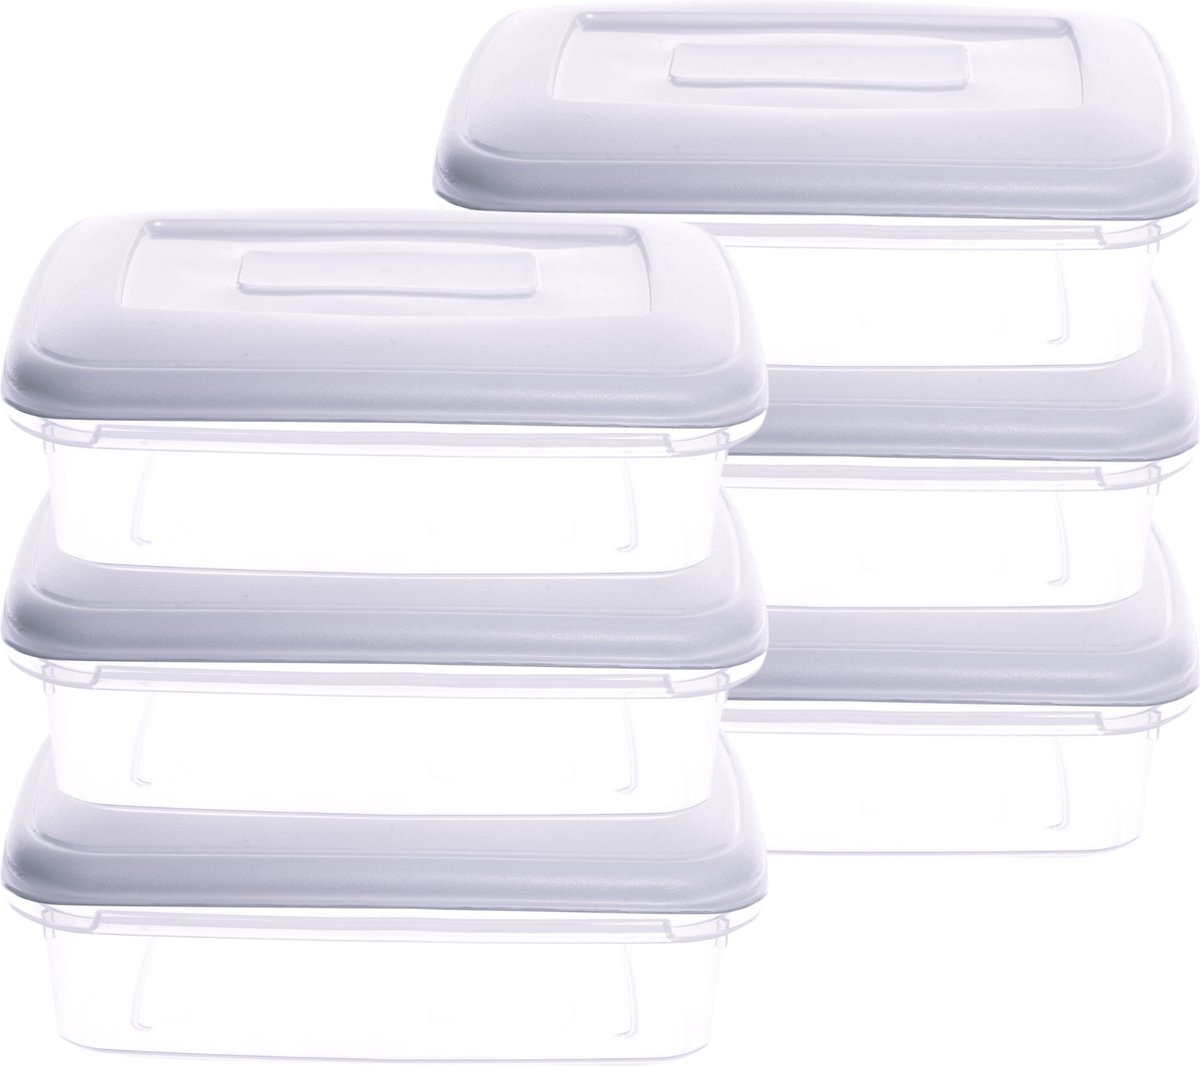 ELGO - Vershoudbakjes - Meal Prep Bakjes- 0.8L - 6 Stuks - BPA vrij